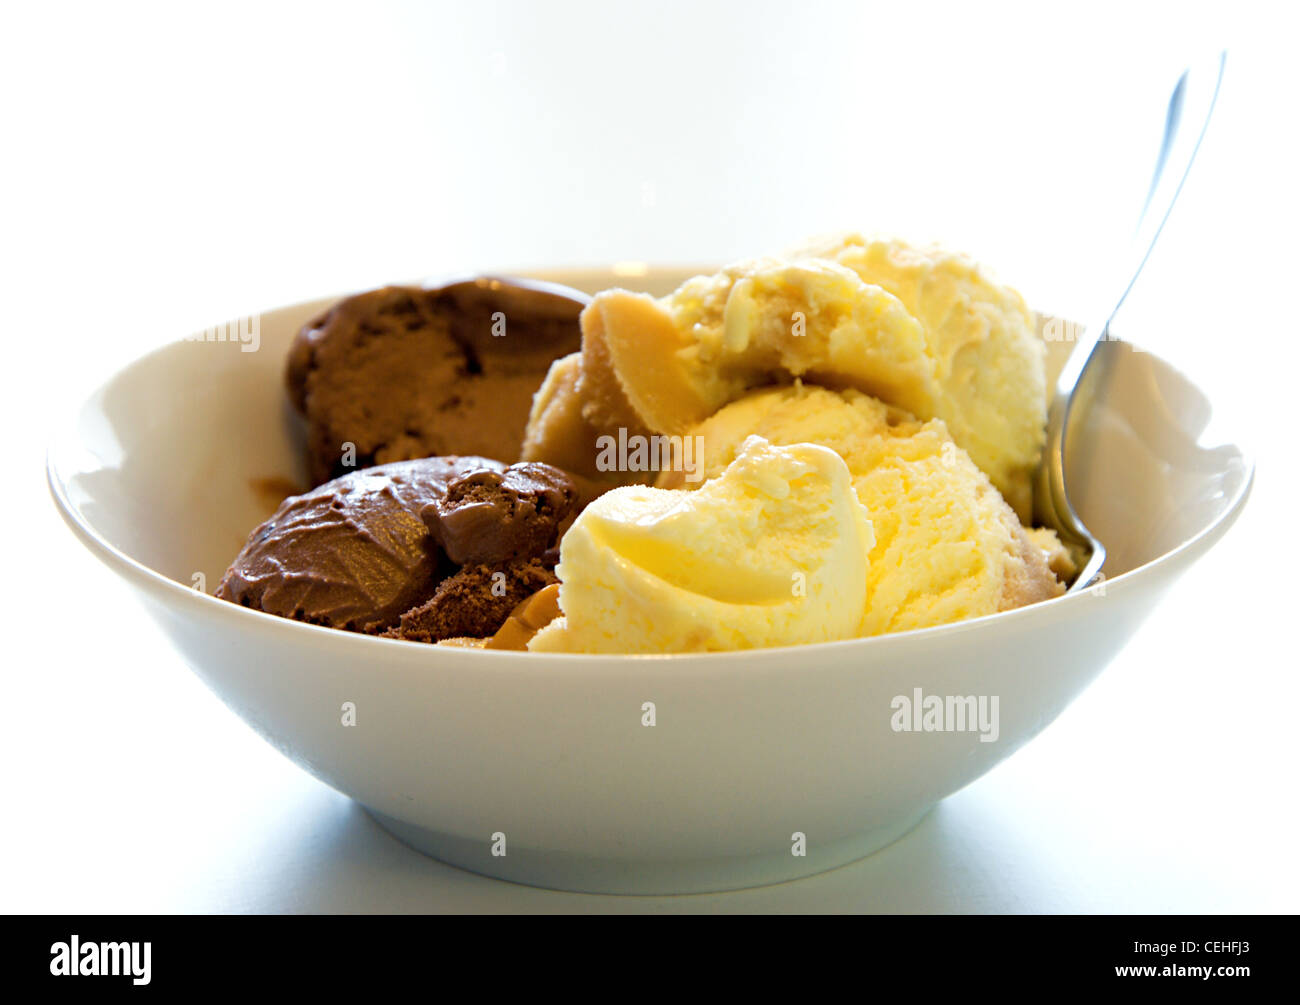 Vanilla and chocolate ice cream in white dish. Stock Photo